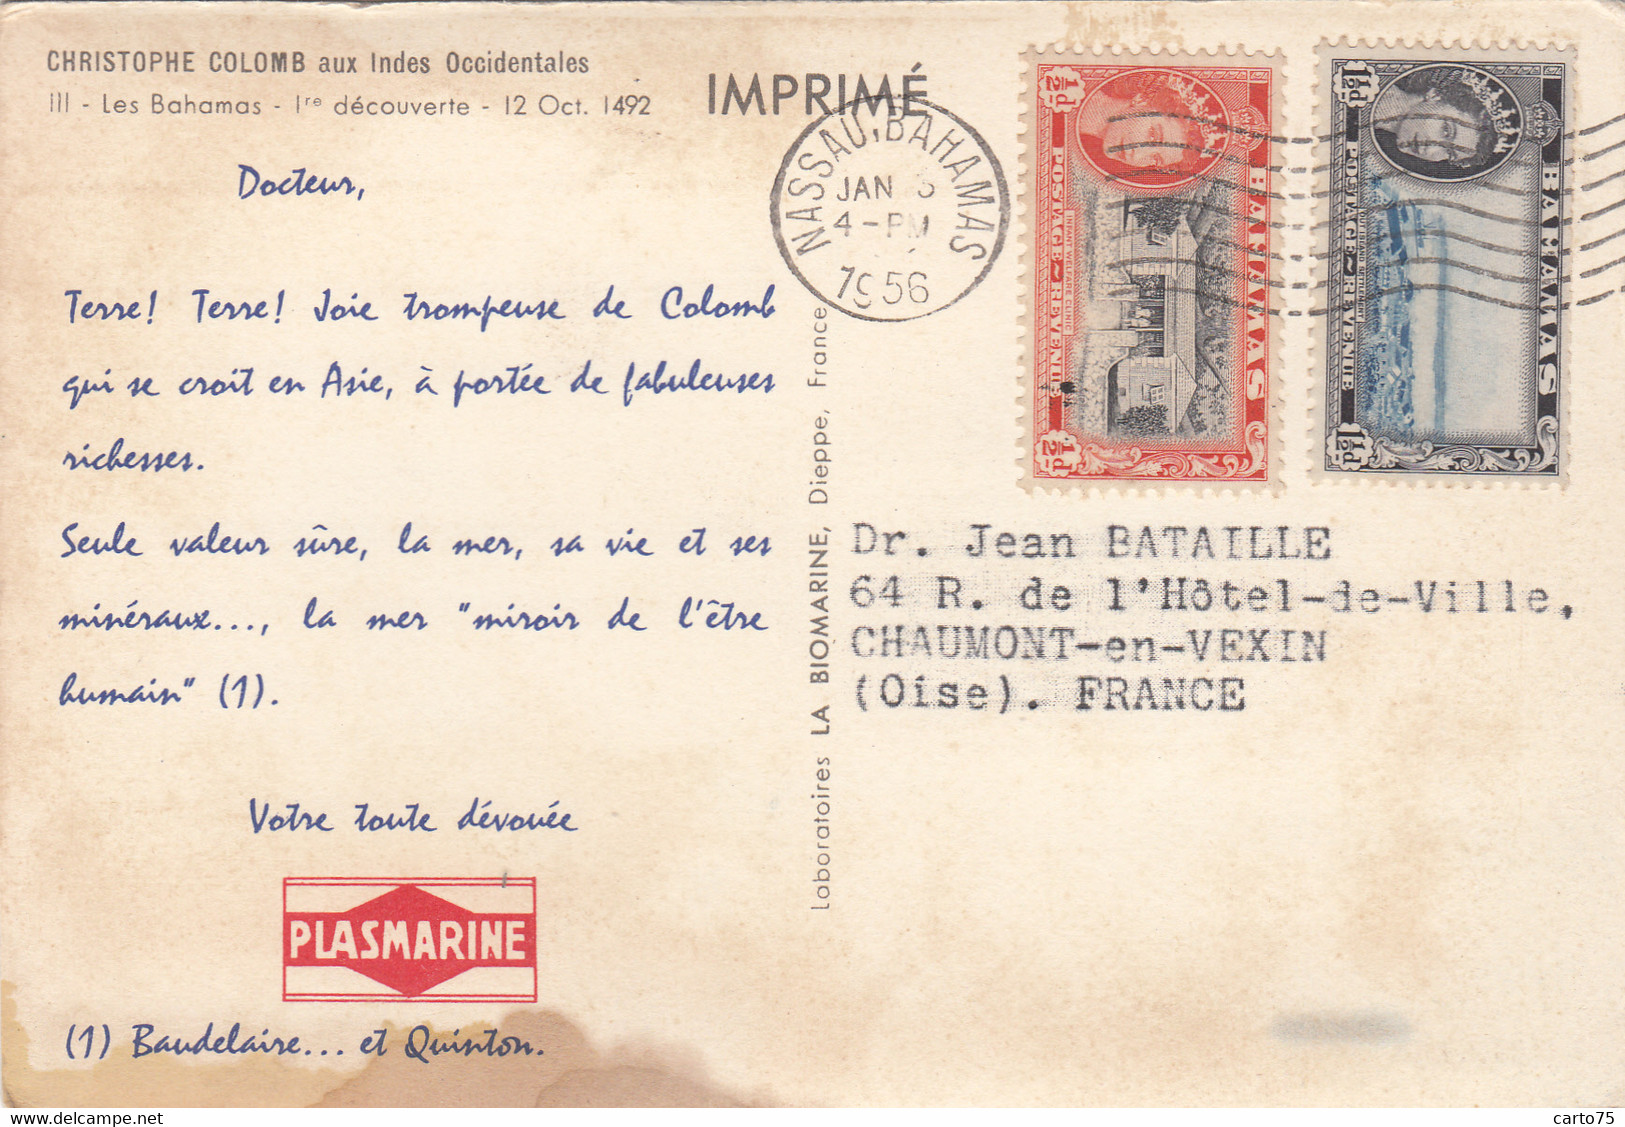 Antilles - Iles Bahamas - Christophe Colomb - Publicité Médecine Plasmarine - Indien - Postmarked 1956 - Bahamas